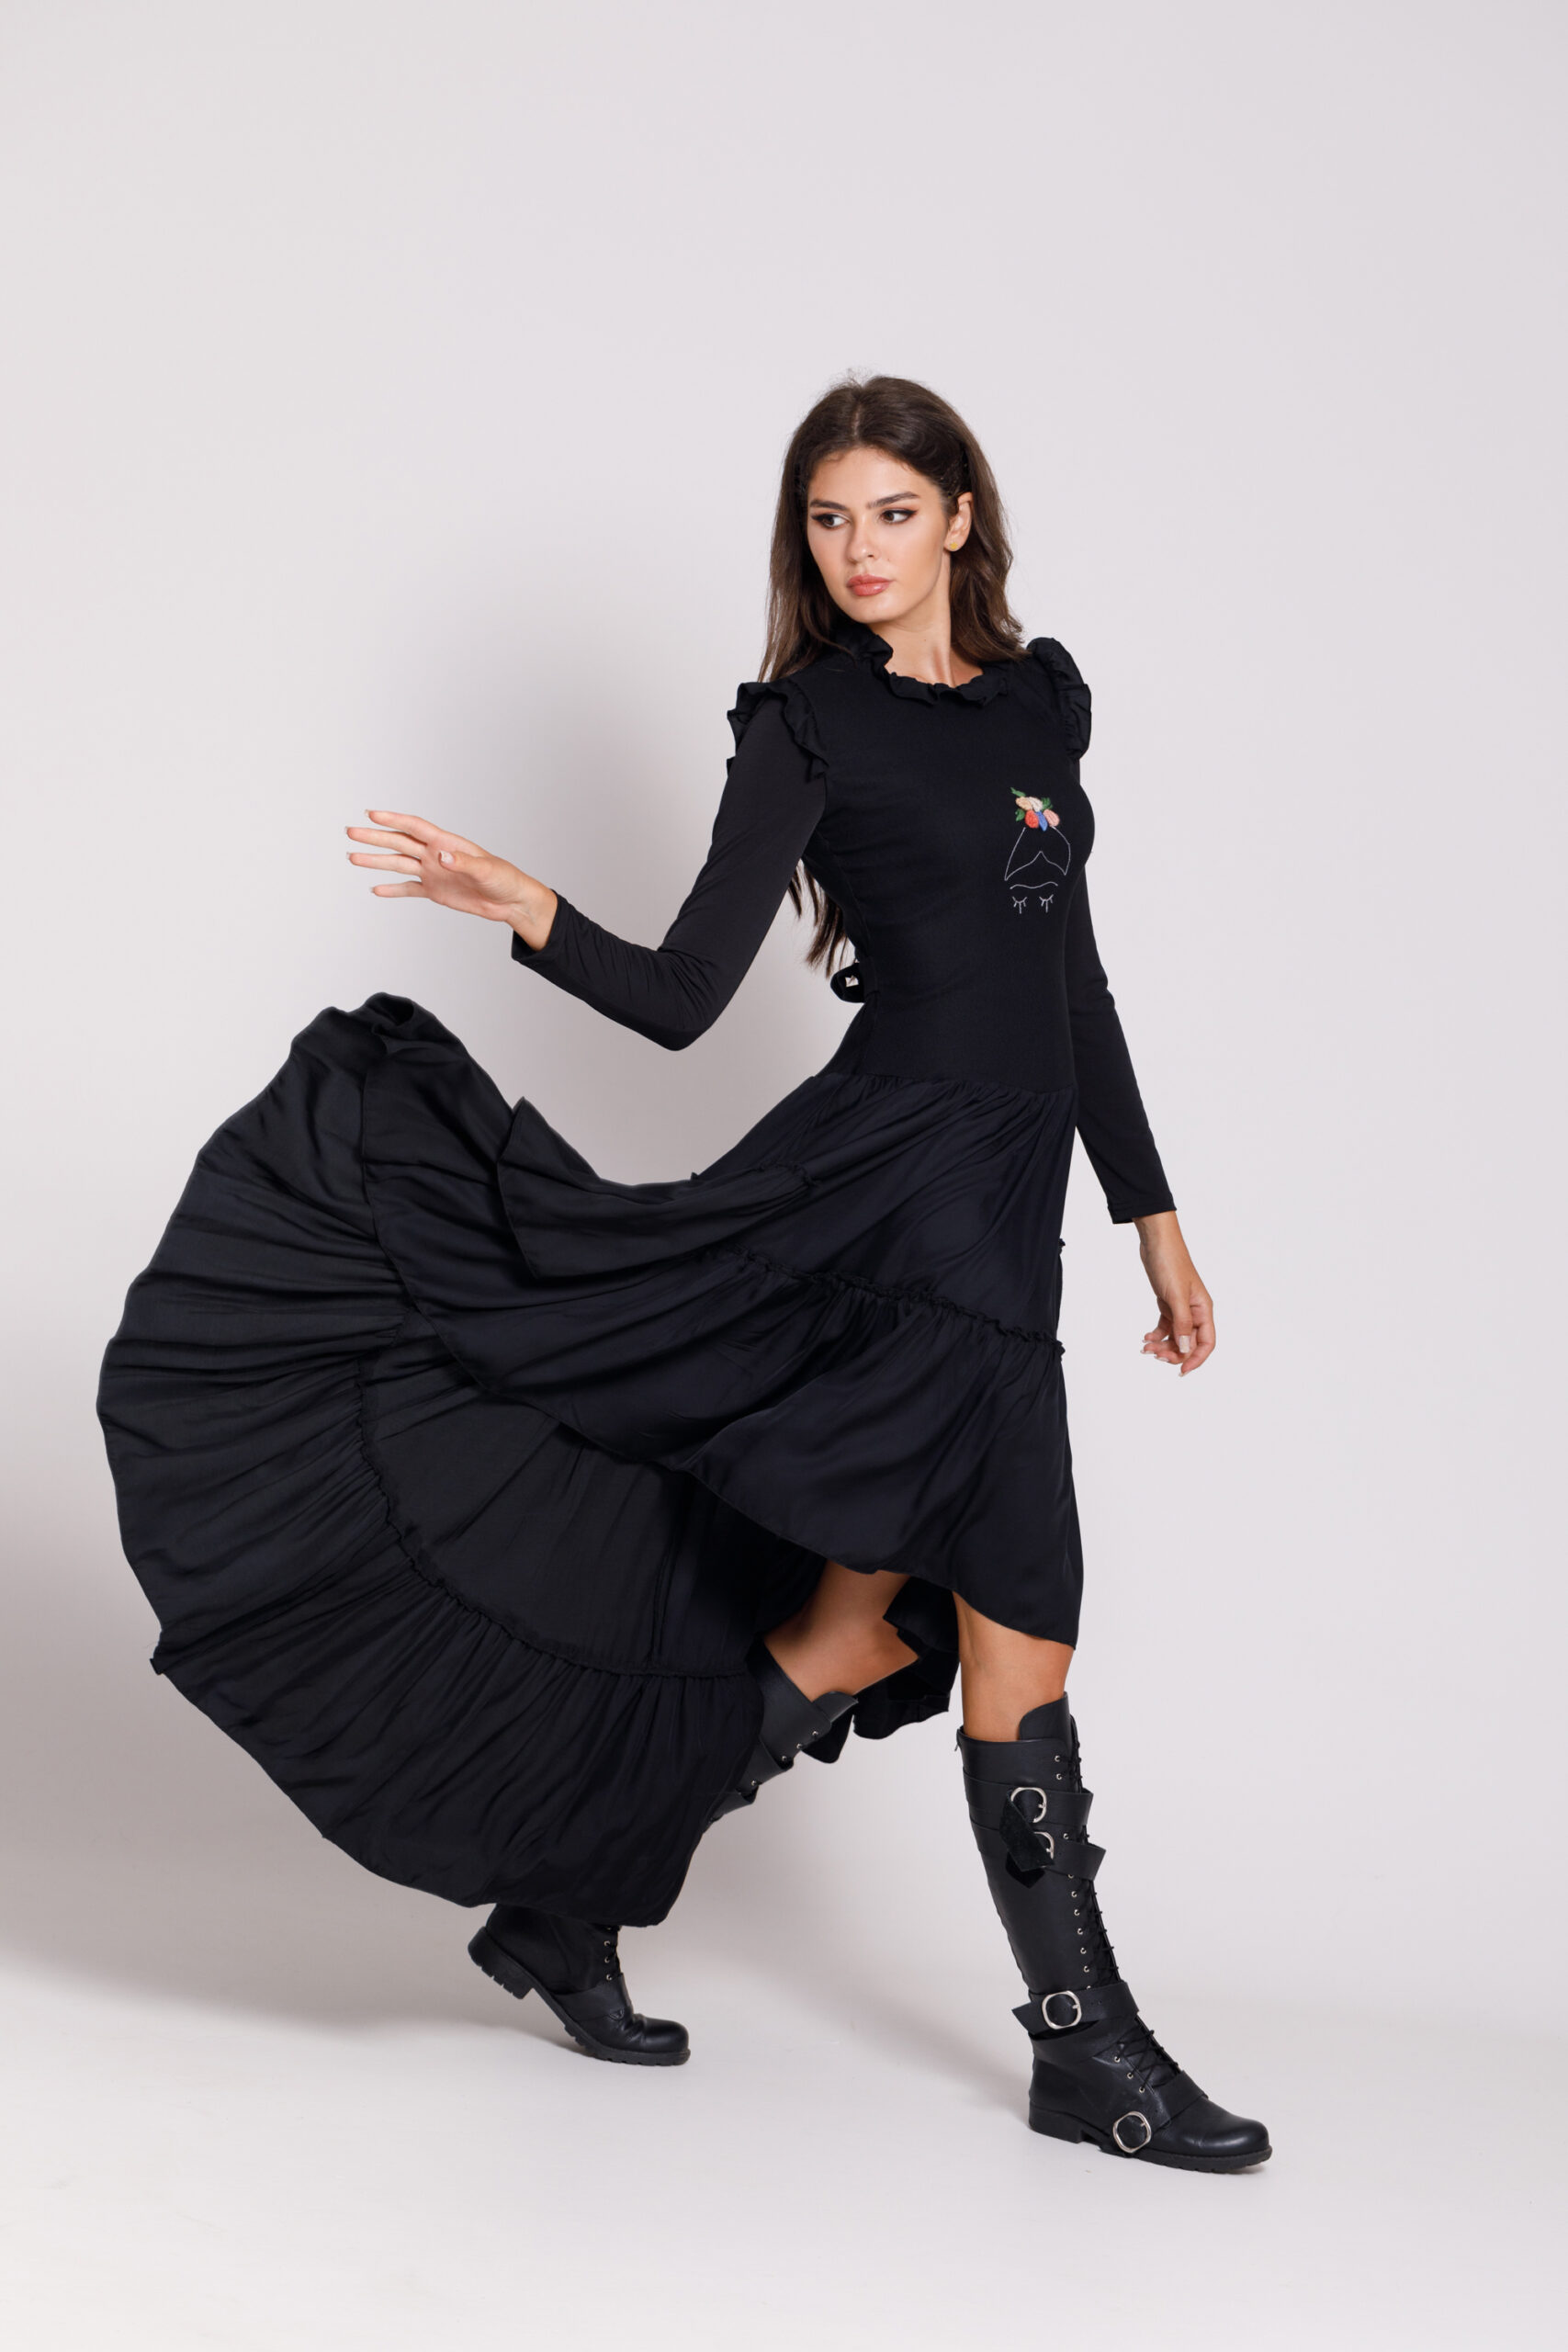 Valentino black casual dress with asymmetric length. Natural fabrics, original design, handmade embroidery